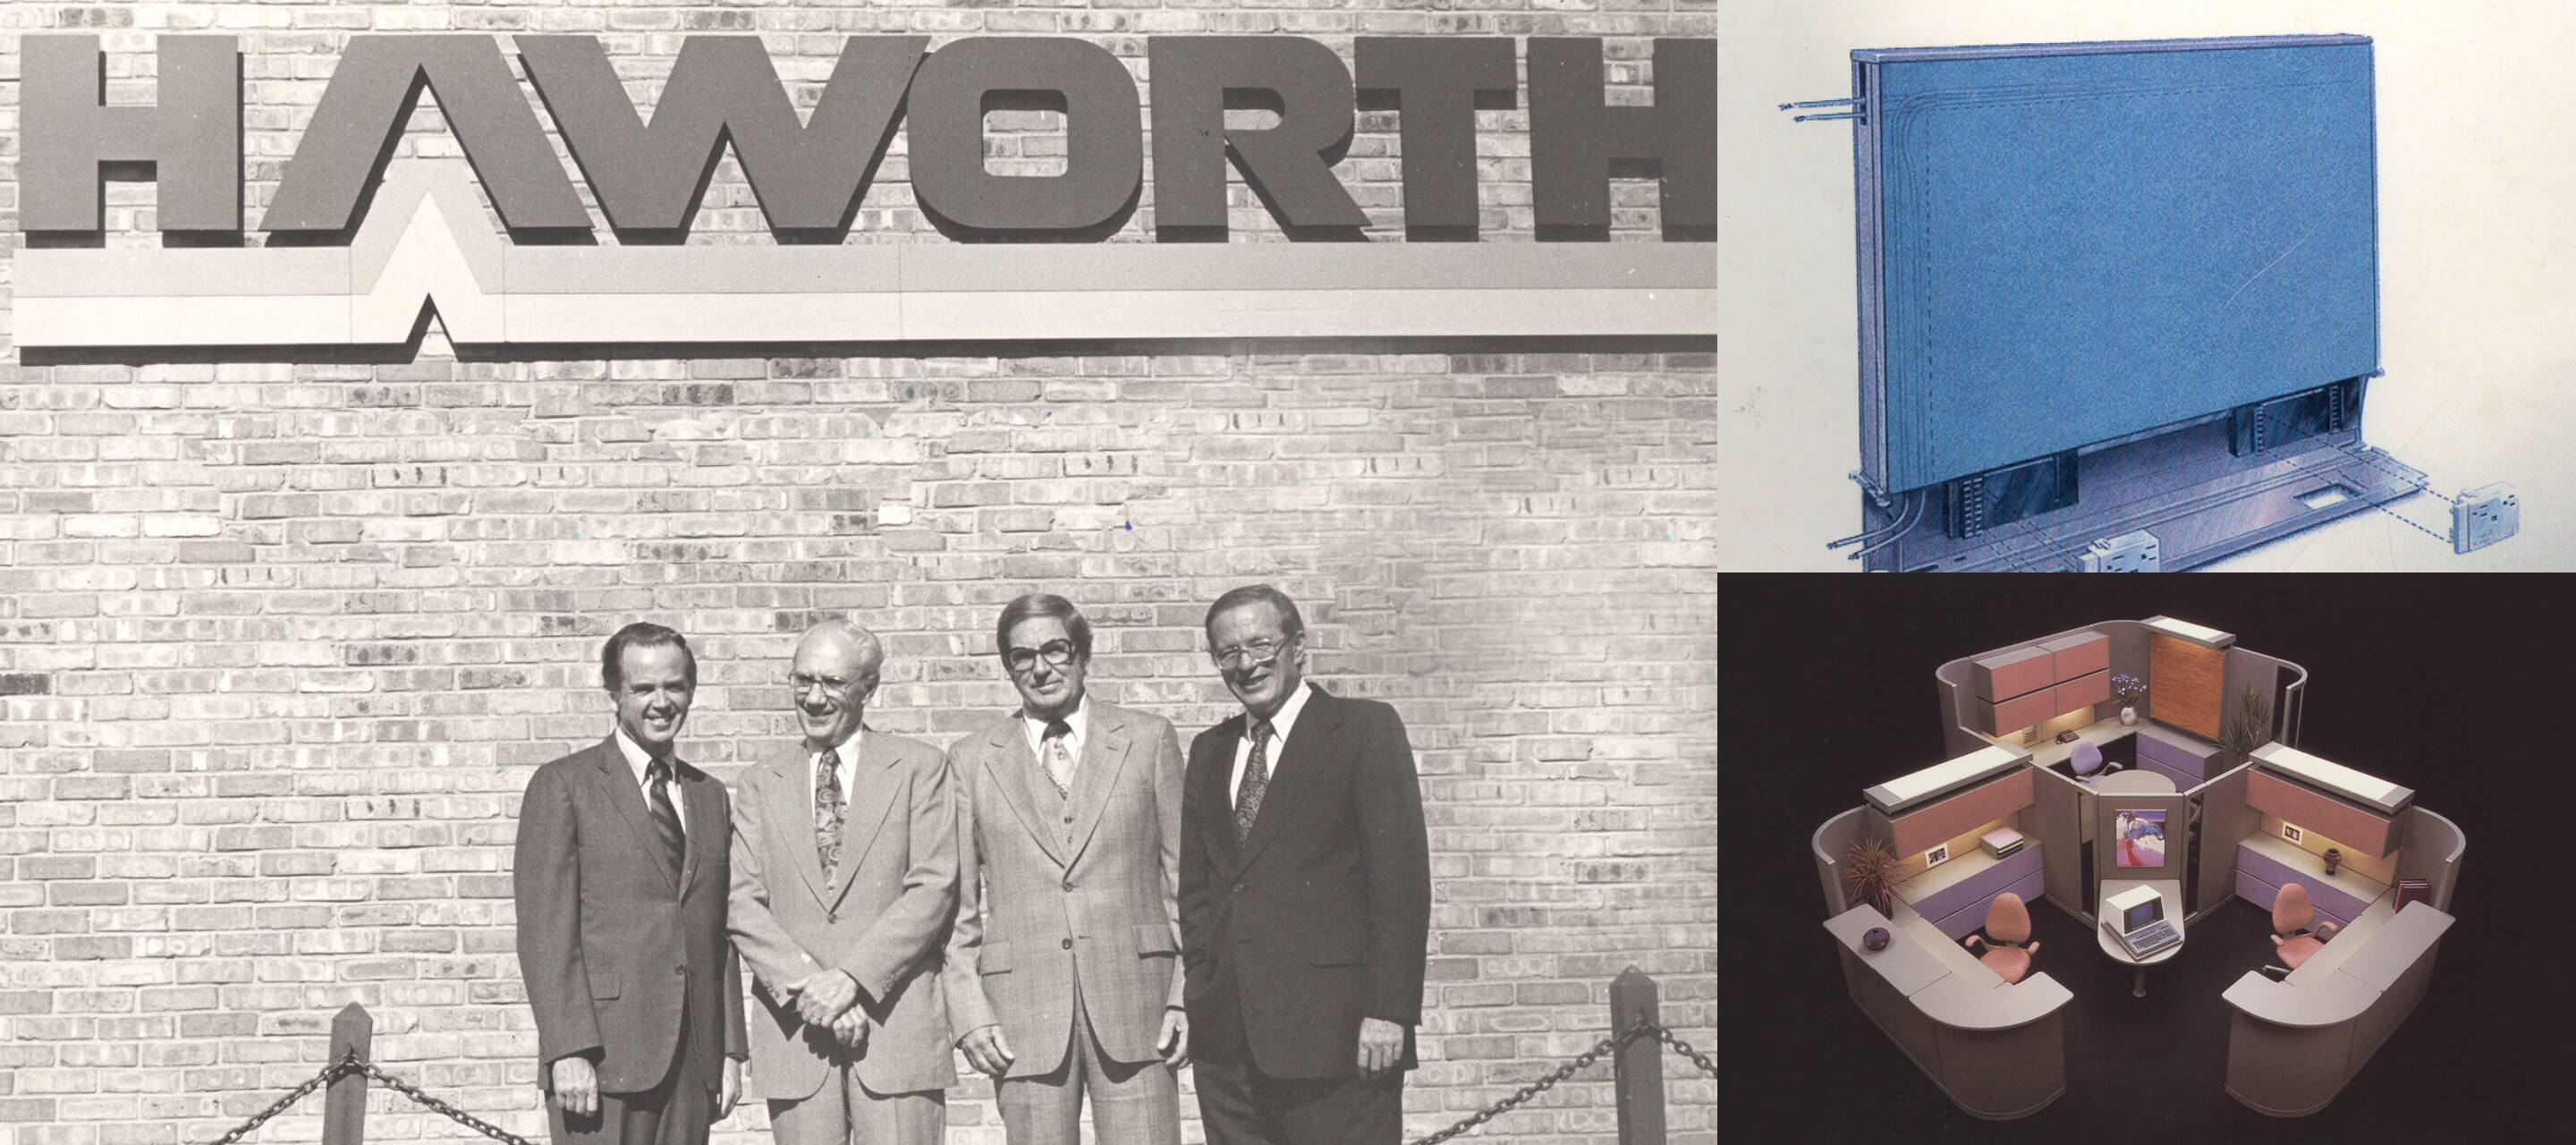 1970年代— 1976年、Modern PartitionはHaworth, Inc.へと改名され、同年Dick Haworthがパネルを事前配線する方法を考案し、オープンプランオフィスシステム以降、最も革新的なワークプレイス製品大半の特許を取得しました。そして、Haworth International, Inc.はオフィスインテリアシステムの製造とマーケティングを可能にするための国際免許取得を目的として設立されました。